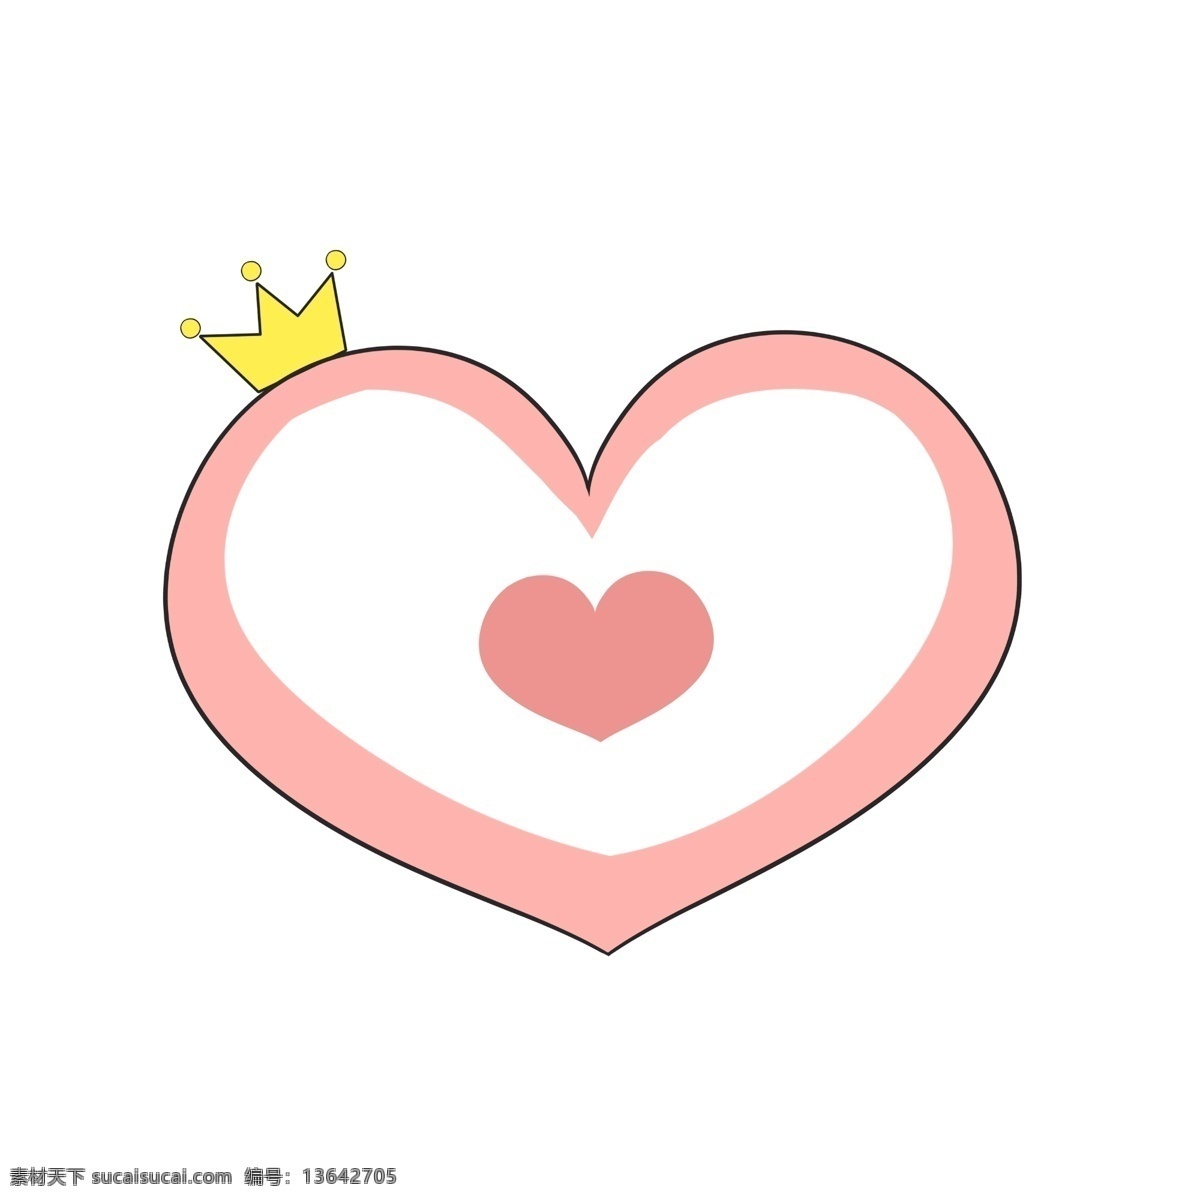 粉红色 心形 边框 插画 爱情信物 黄色皇冠 对话看 唯美边框 边框插画 装饰框